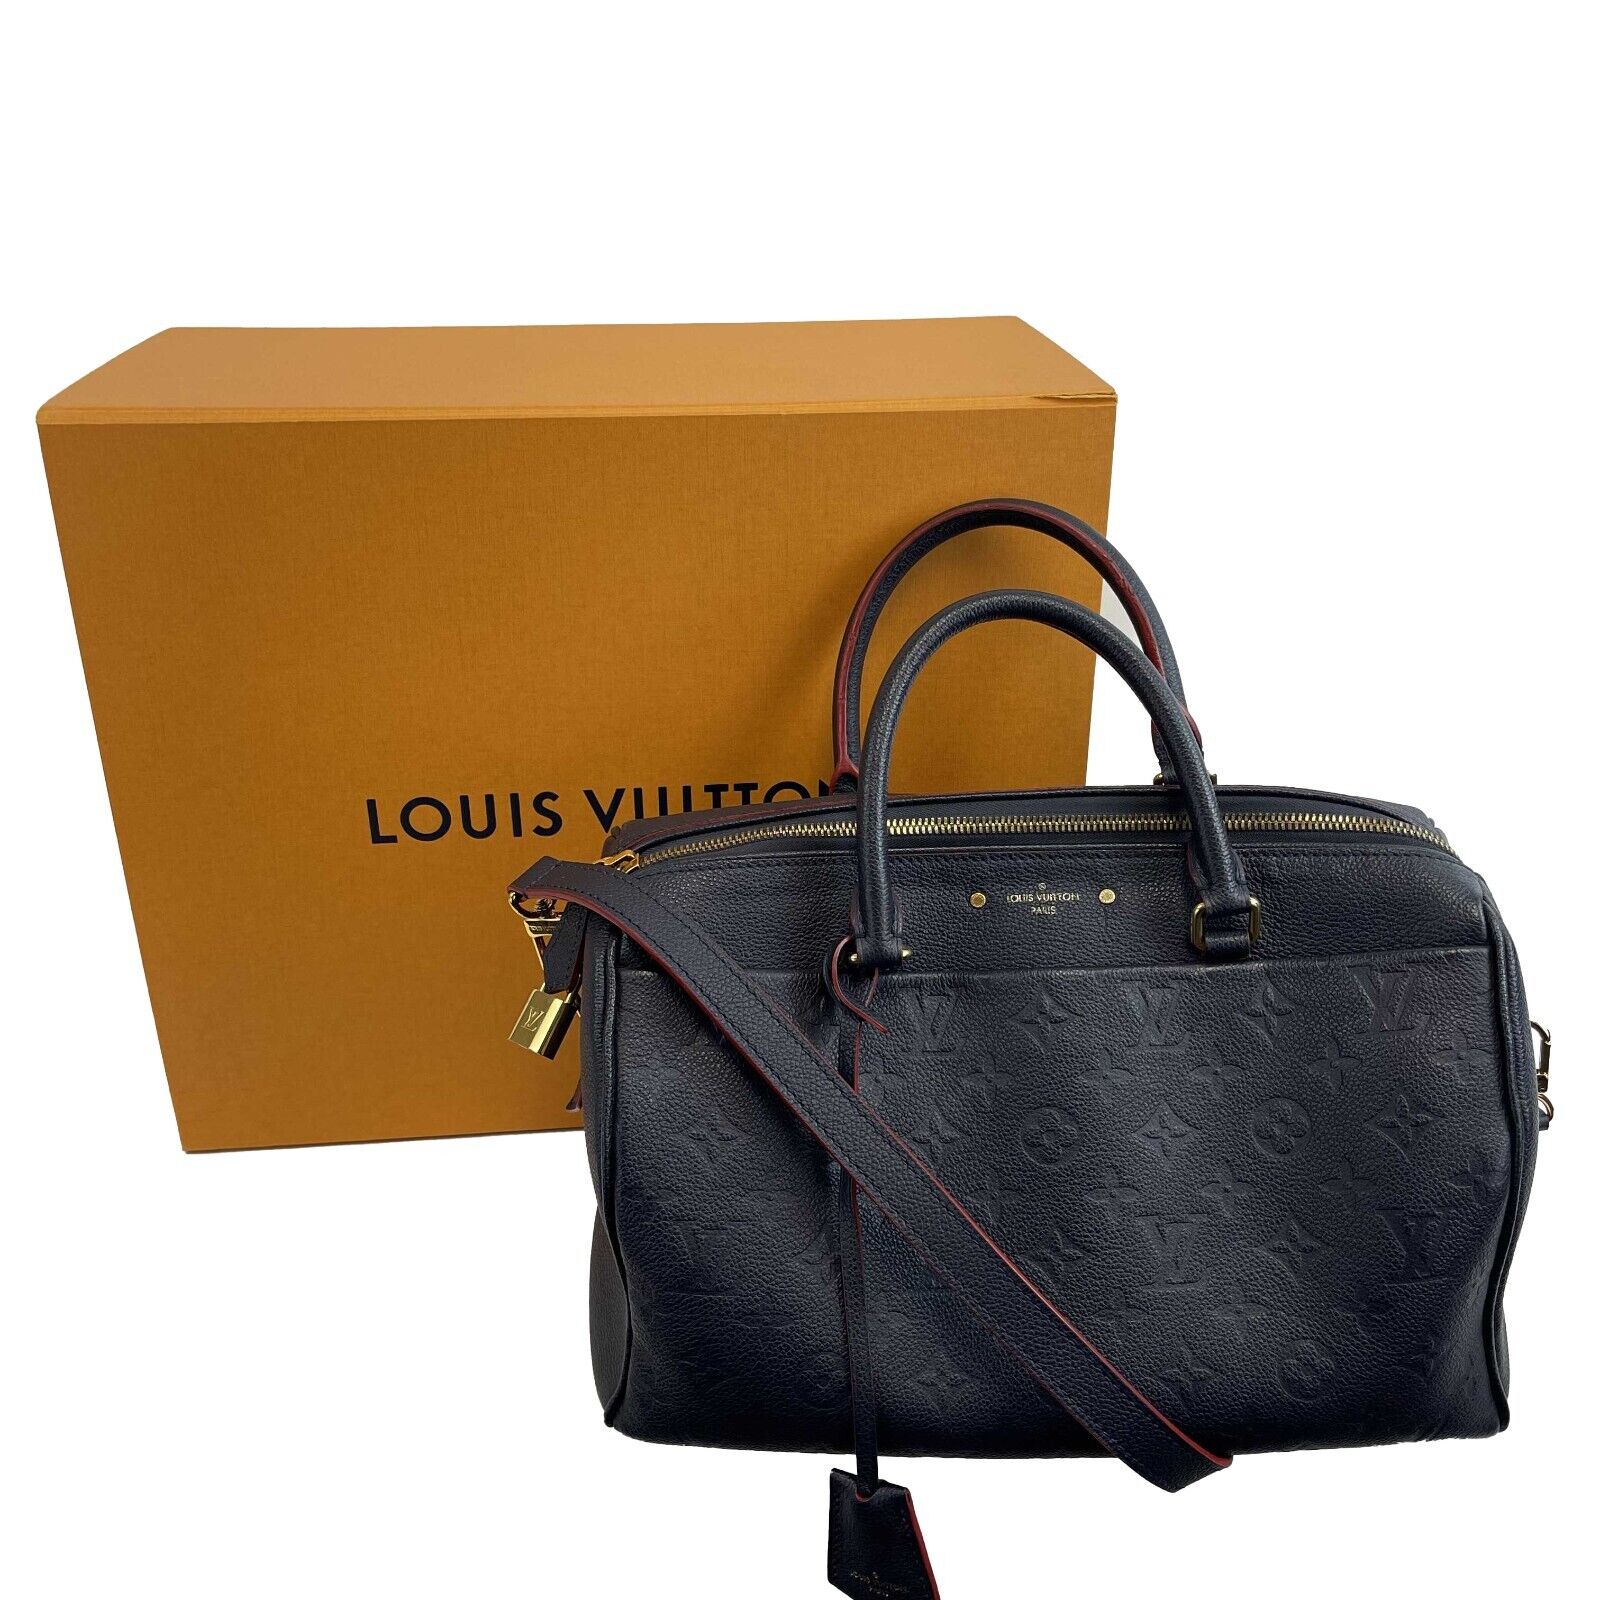 Louis Vuitton Empreinte Speedy Bandouliere